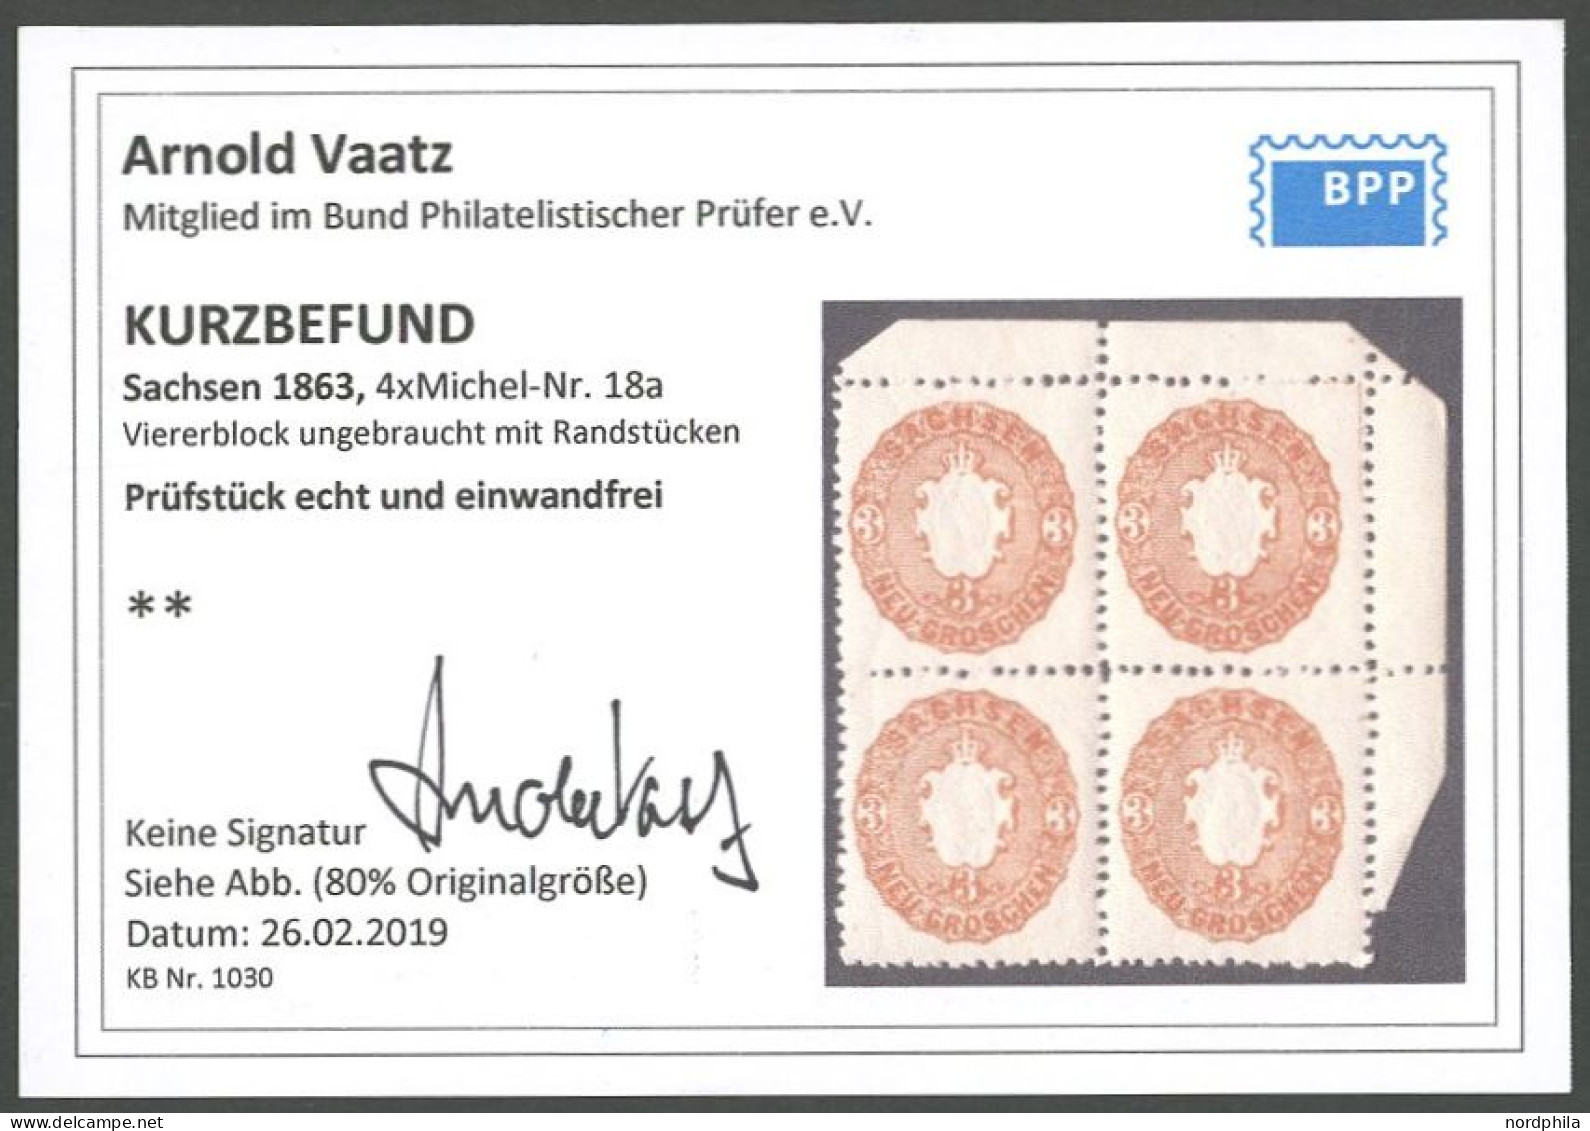 SACHSEN 18a VB , 1866, 3 Ngr. Braunorange Im Postfrischen Viererblock, Pracht, Kurzbefund Vaatz - Saxony